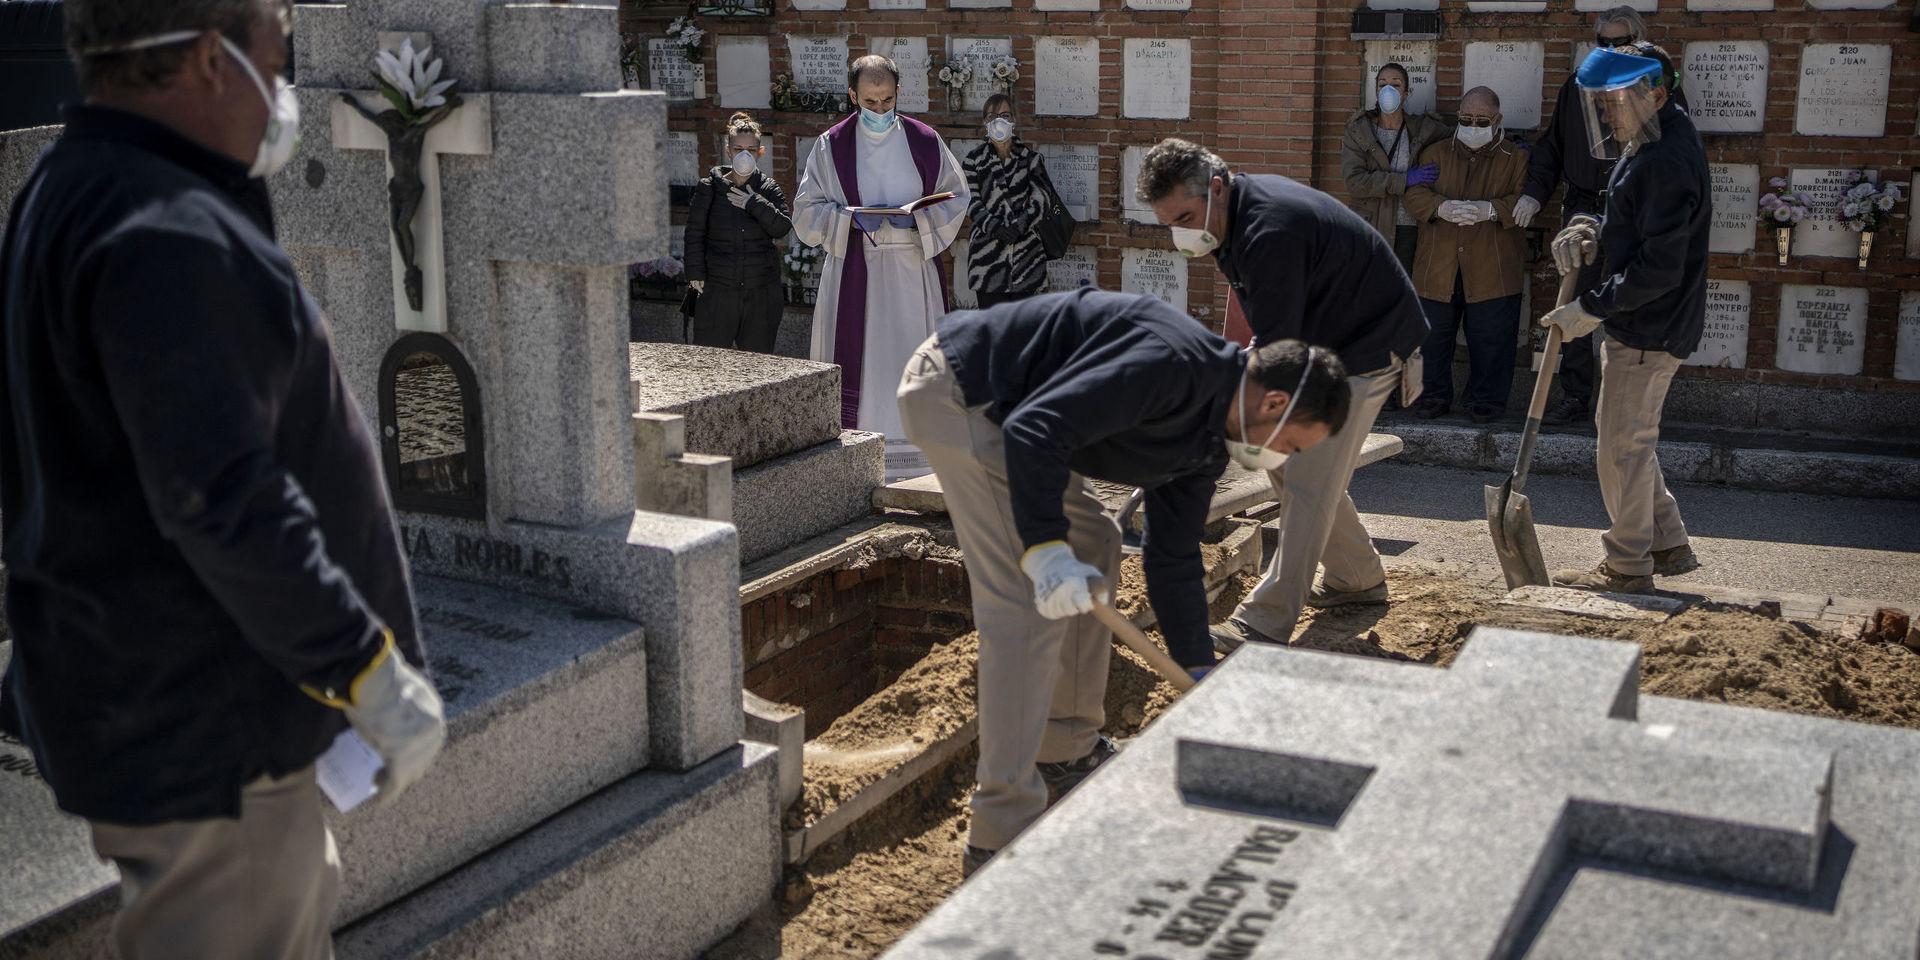 En präst och anhöriga ber en bön i samband med att en person som avlidit i covid-19 begravs på en kyrkogård i Madrid.